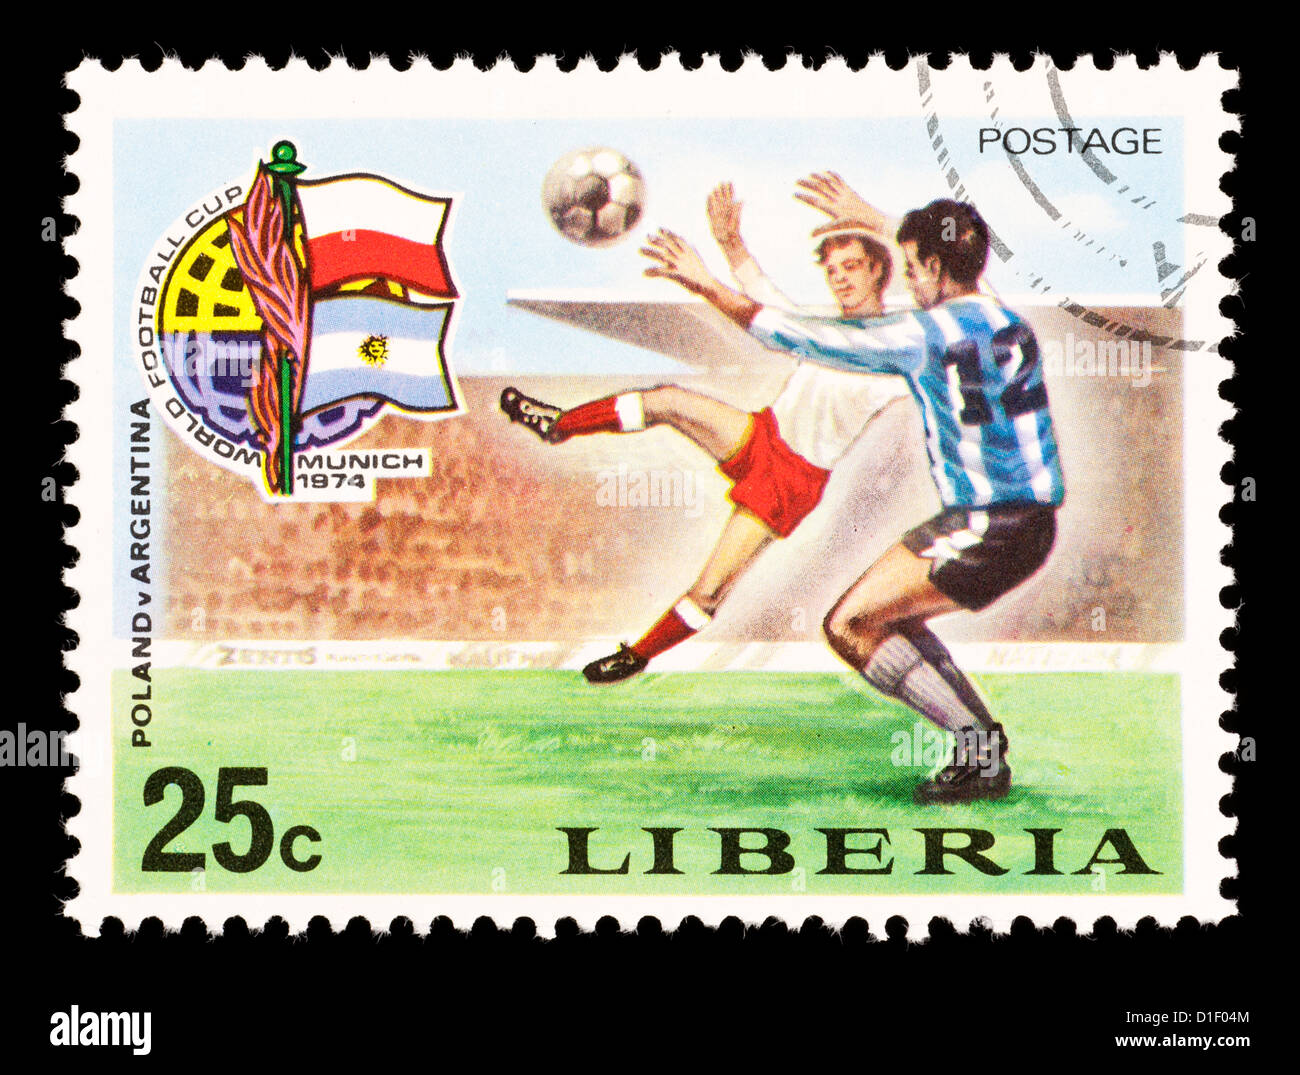 Timbre-poste du Libéria représentant des joueurs de football, émis pour la Coupe du Monde de Football 1974. Banque D'Images